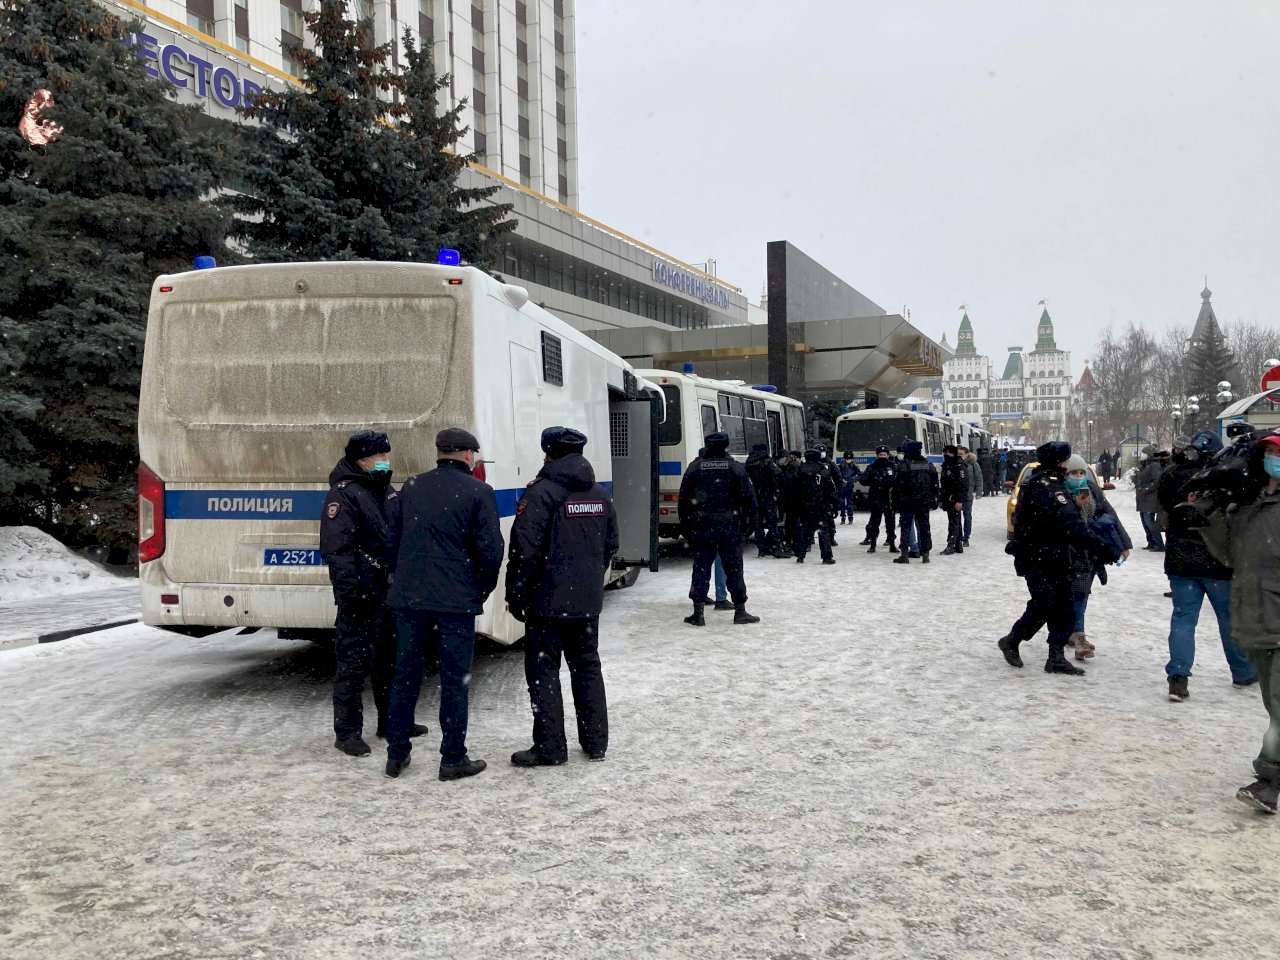 參加俄羅斯反對派論壇  150位知名人士被逮